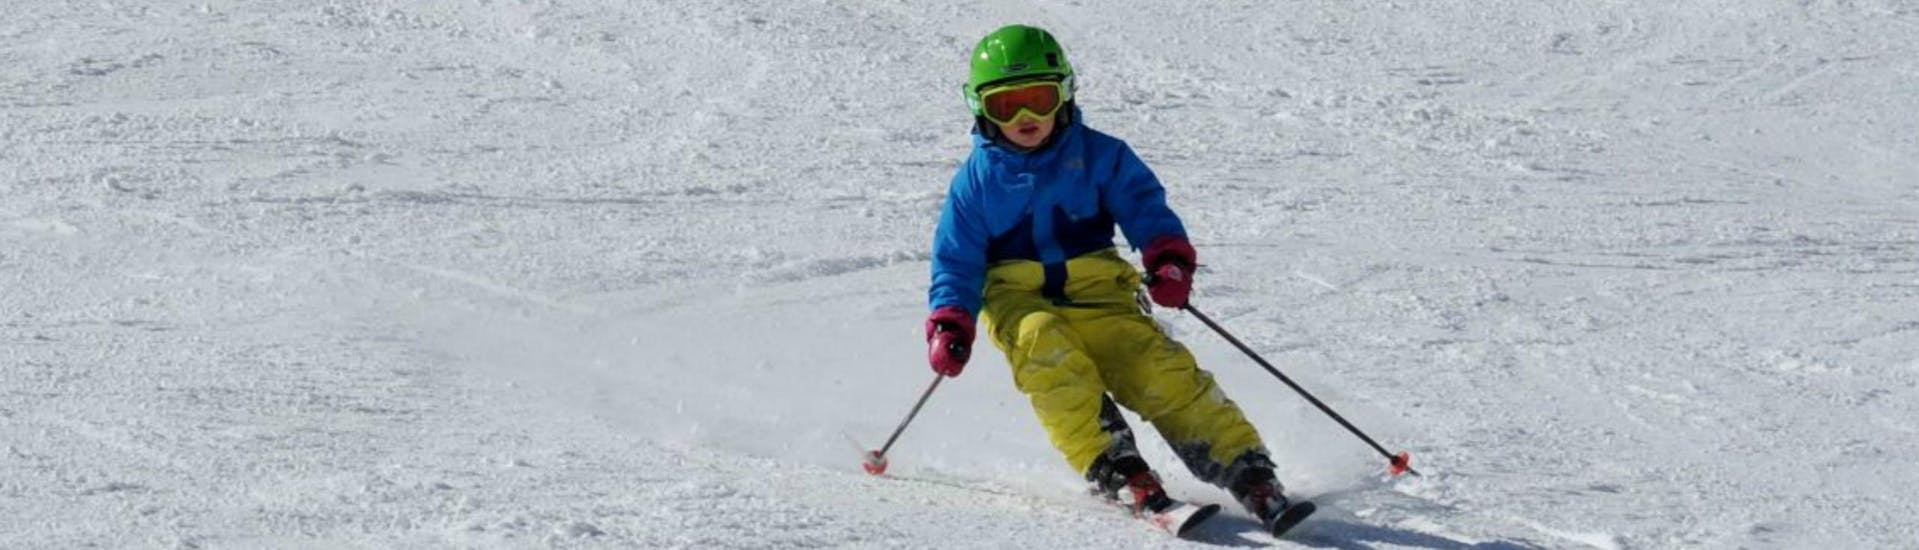 Privater Skikurs für Kinder aller Levels.